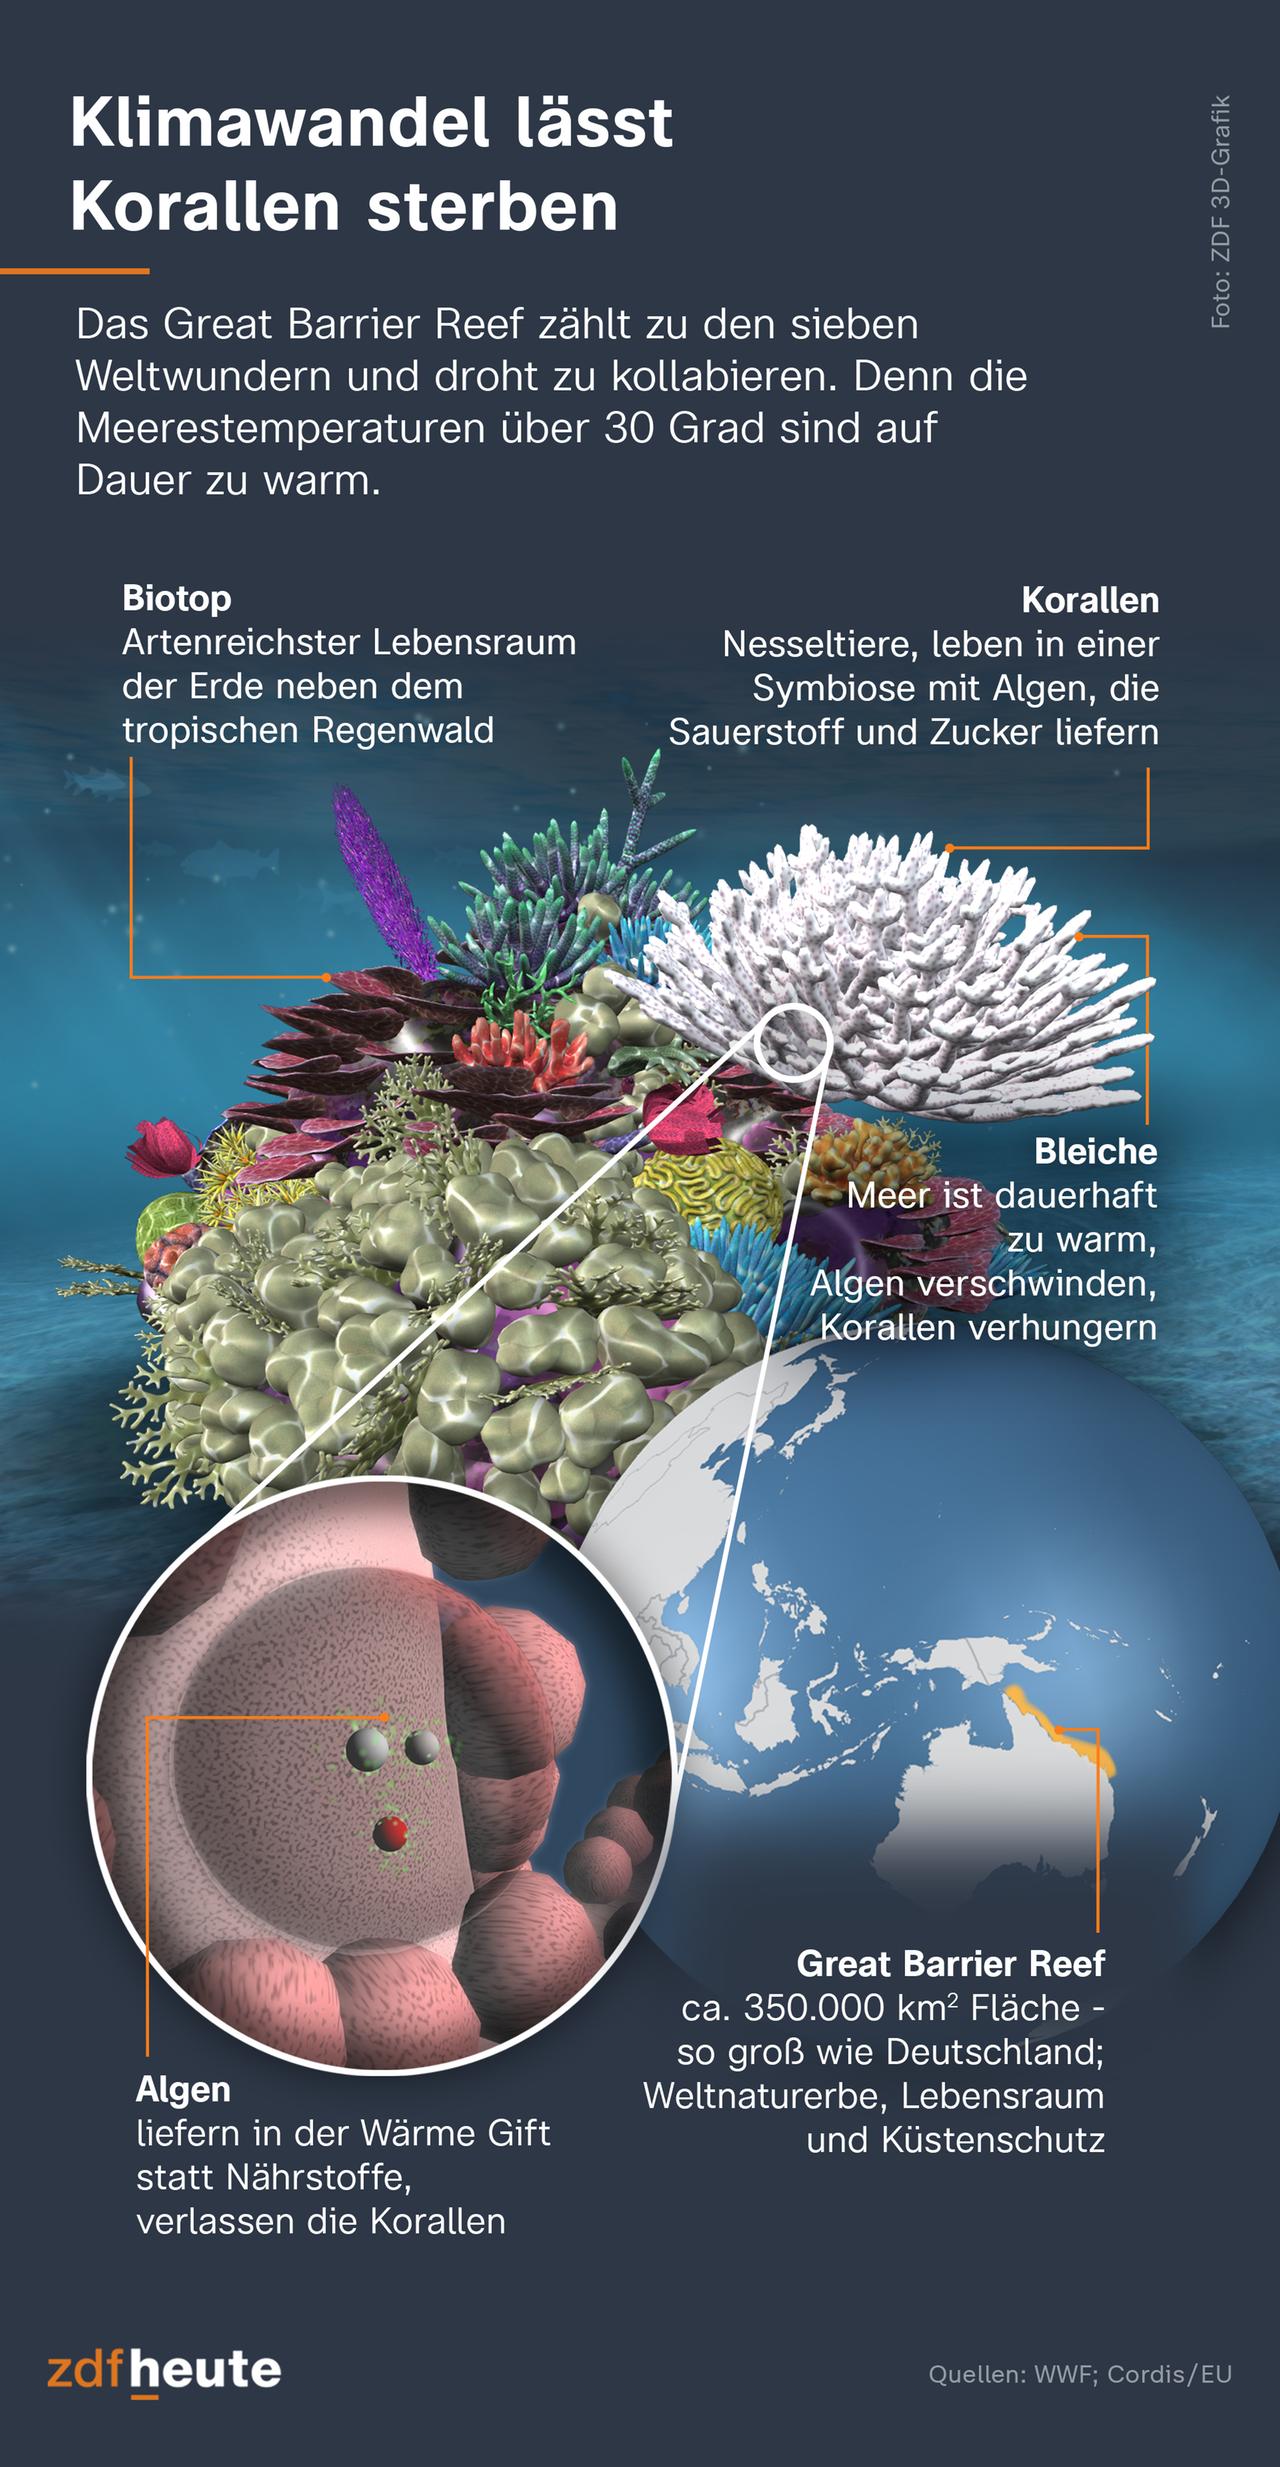 Die Korallen verbleichen, weil die Algen in dem zu warmen Meerwasser Gift statt Nährstoffe produzieren. Sie verlassen die Korallentiere, die dann verhungern.